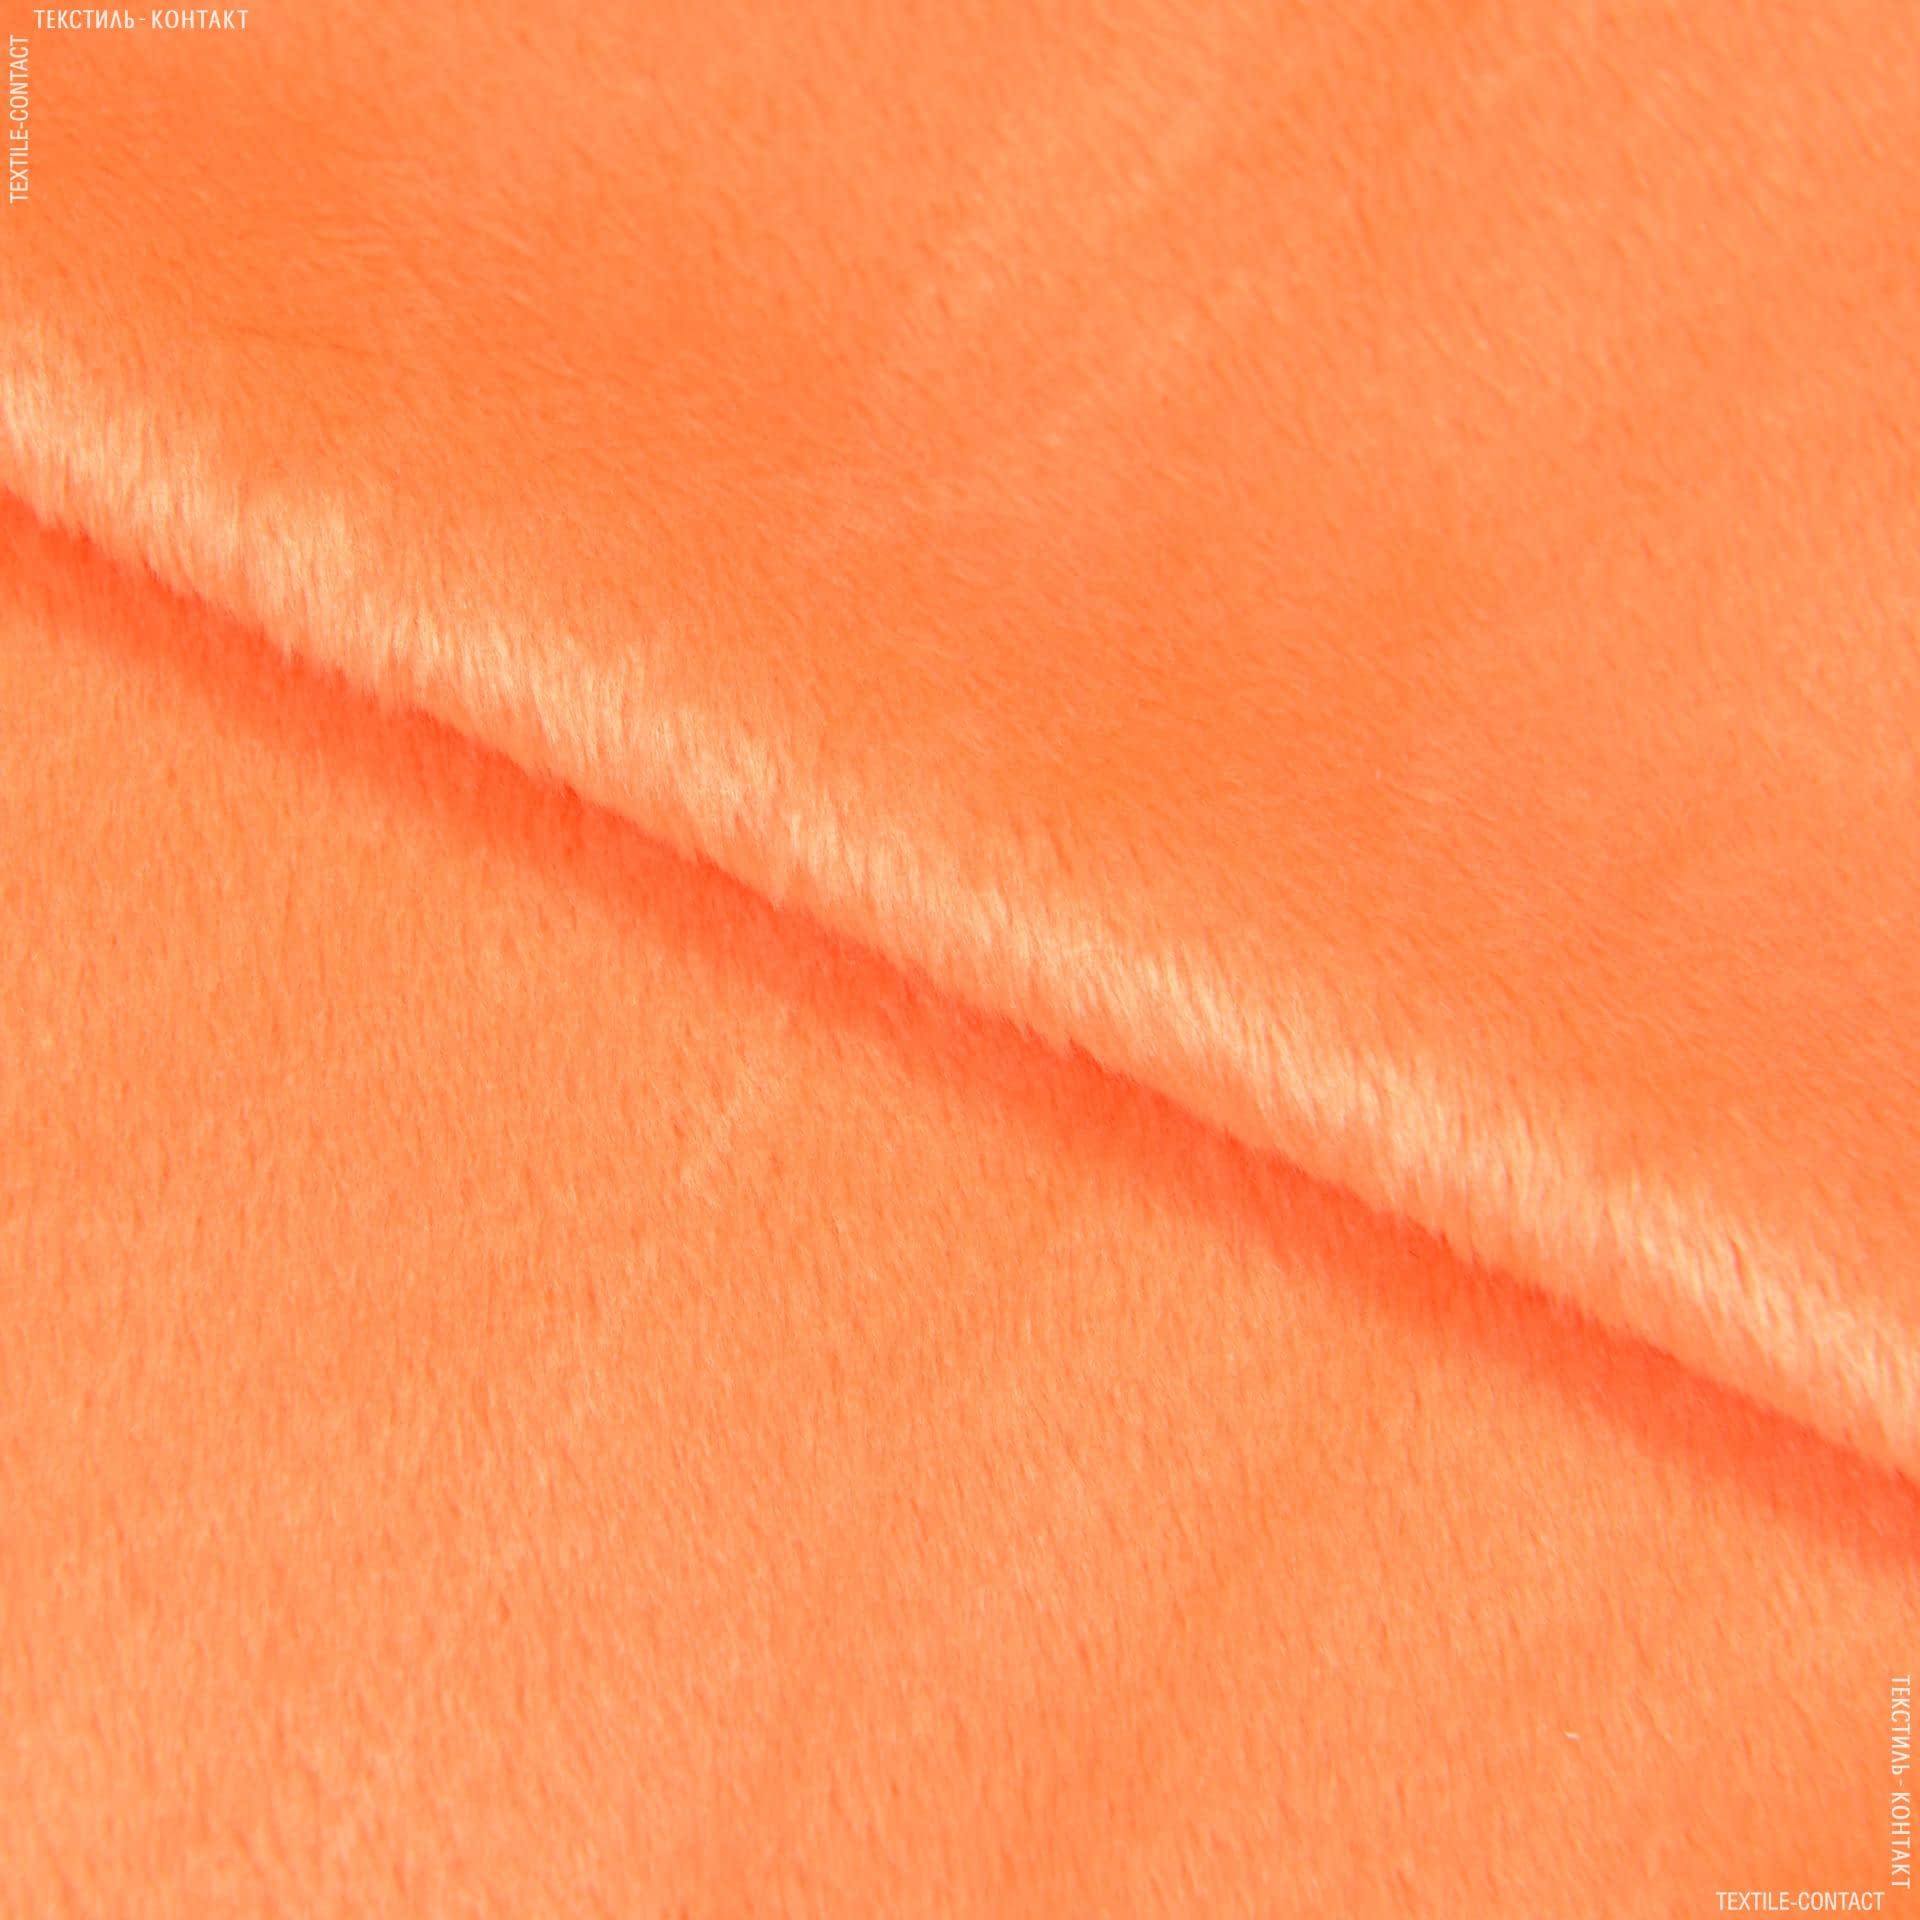 Ткани для мягких игрушек - Плюш (вельбо) оранжевый